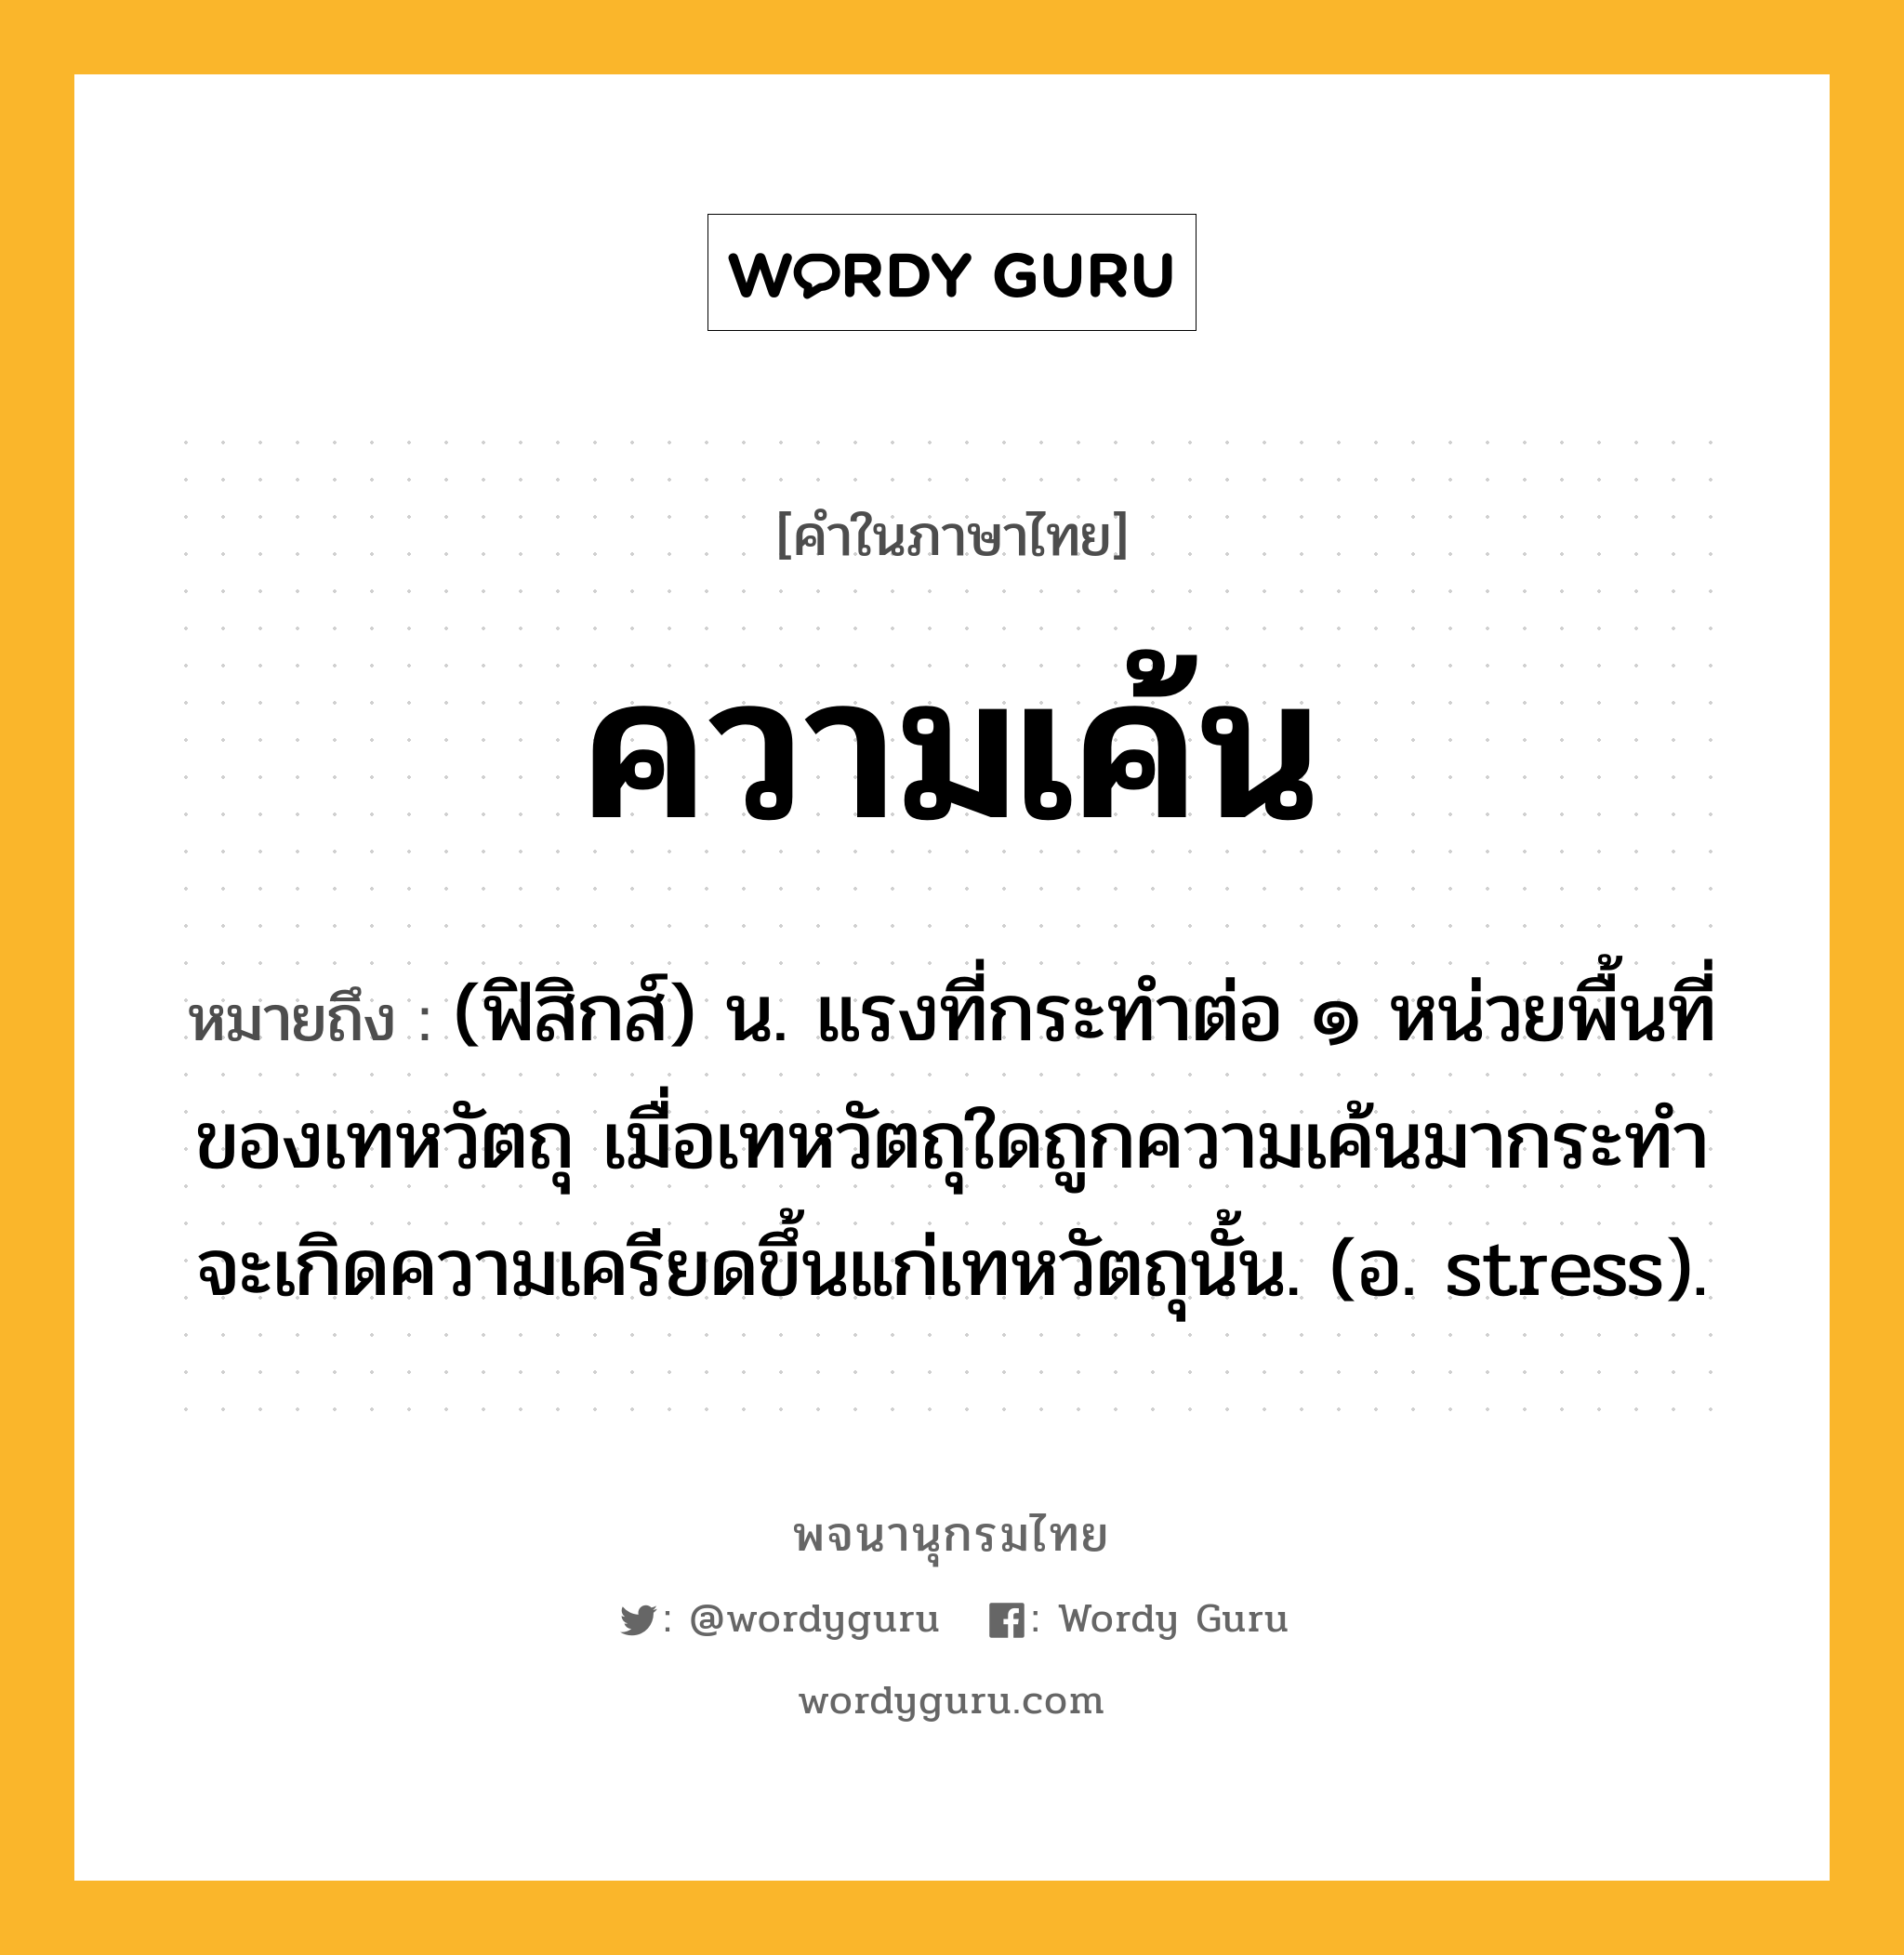 ความเค้น หมายถึงอะไร?, คำในภาษาไทย ความเค้น หมายถึง (ฟิสิกส์) น. แรงที่กระทําต่อ ๑ หน่วยพื้นที่ของเทหวัตถุ เมื่อเทหวัตถุใดถูกความเค้นมากระทําจะเกิดความเครียดขึ้นแก่เทหวัตถุนั้น. (อ. stress).